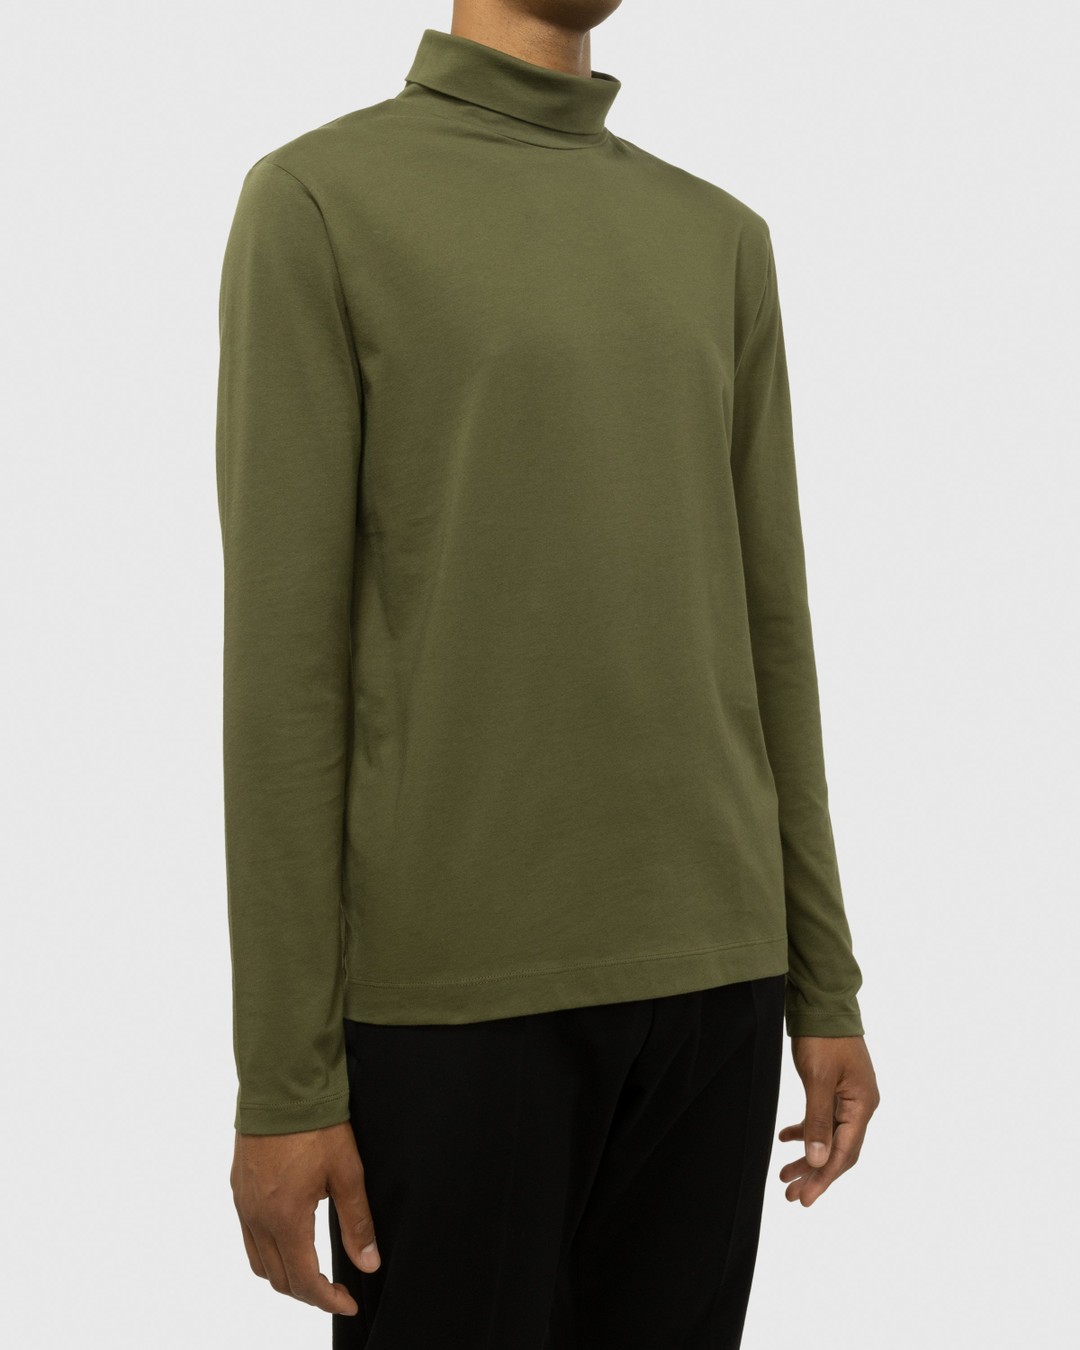 Dries van Noten – Heyzo Turtleneck Jersey Shirt Green - Sweats - Green - Image 3